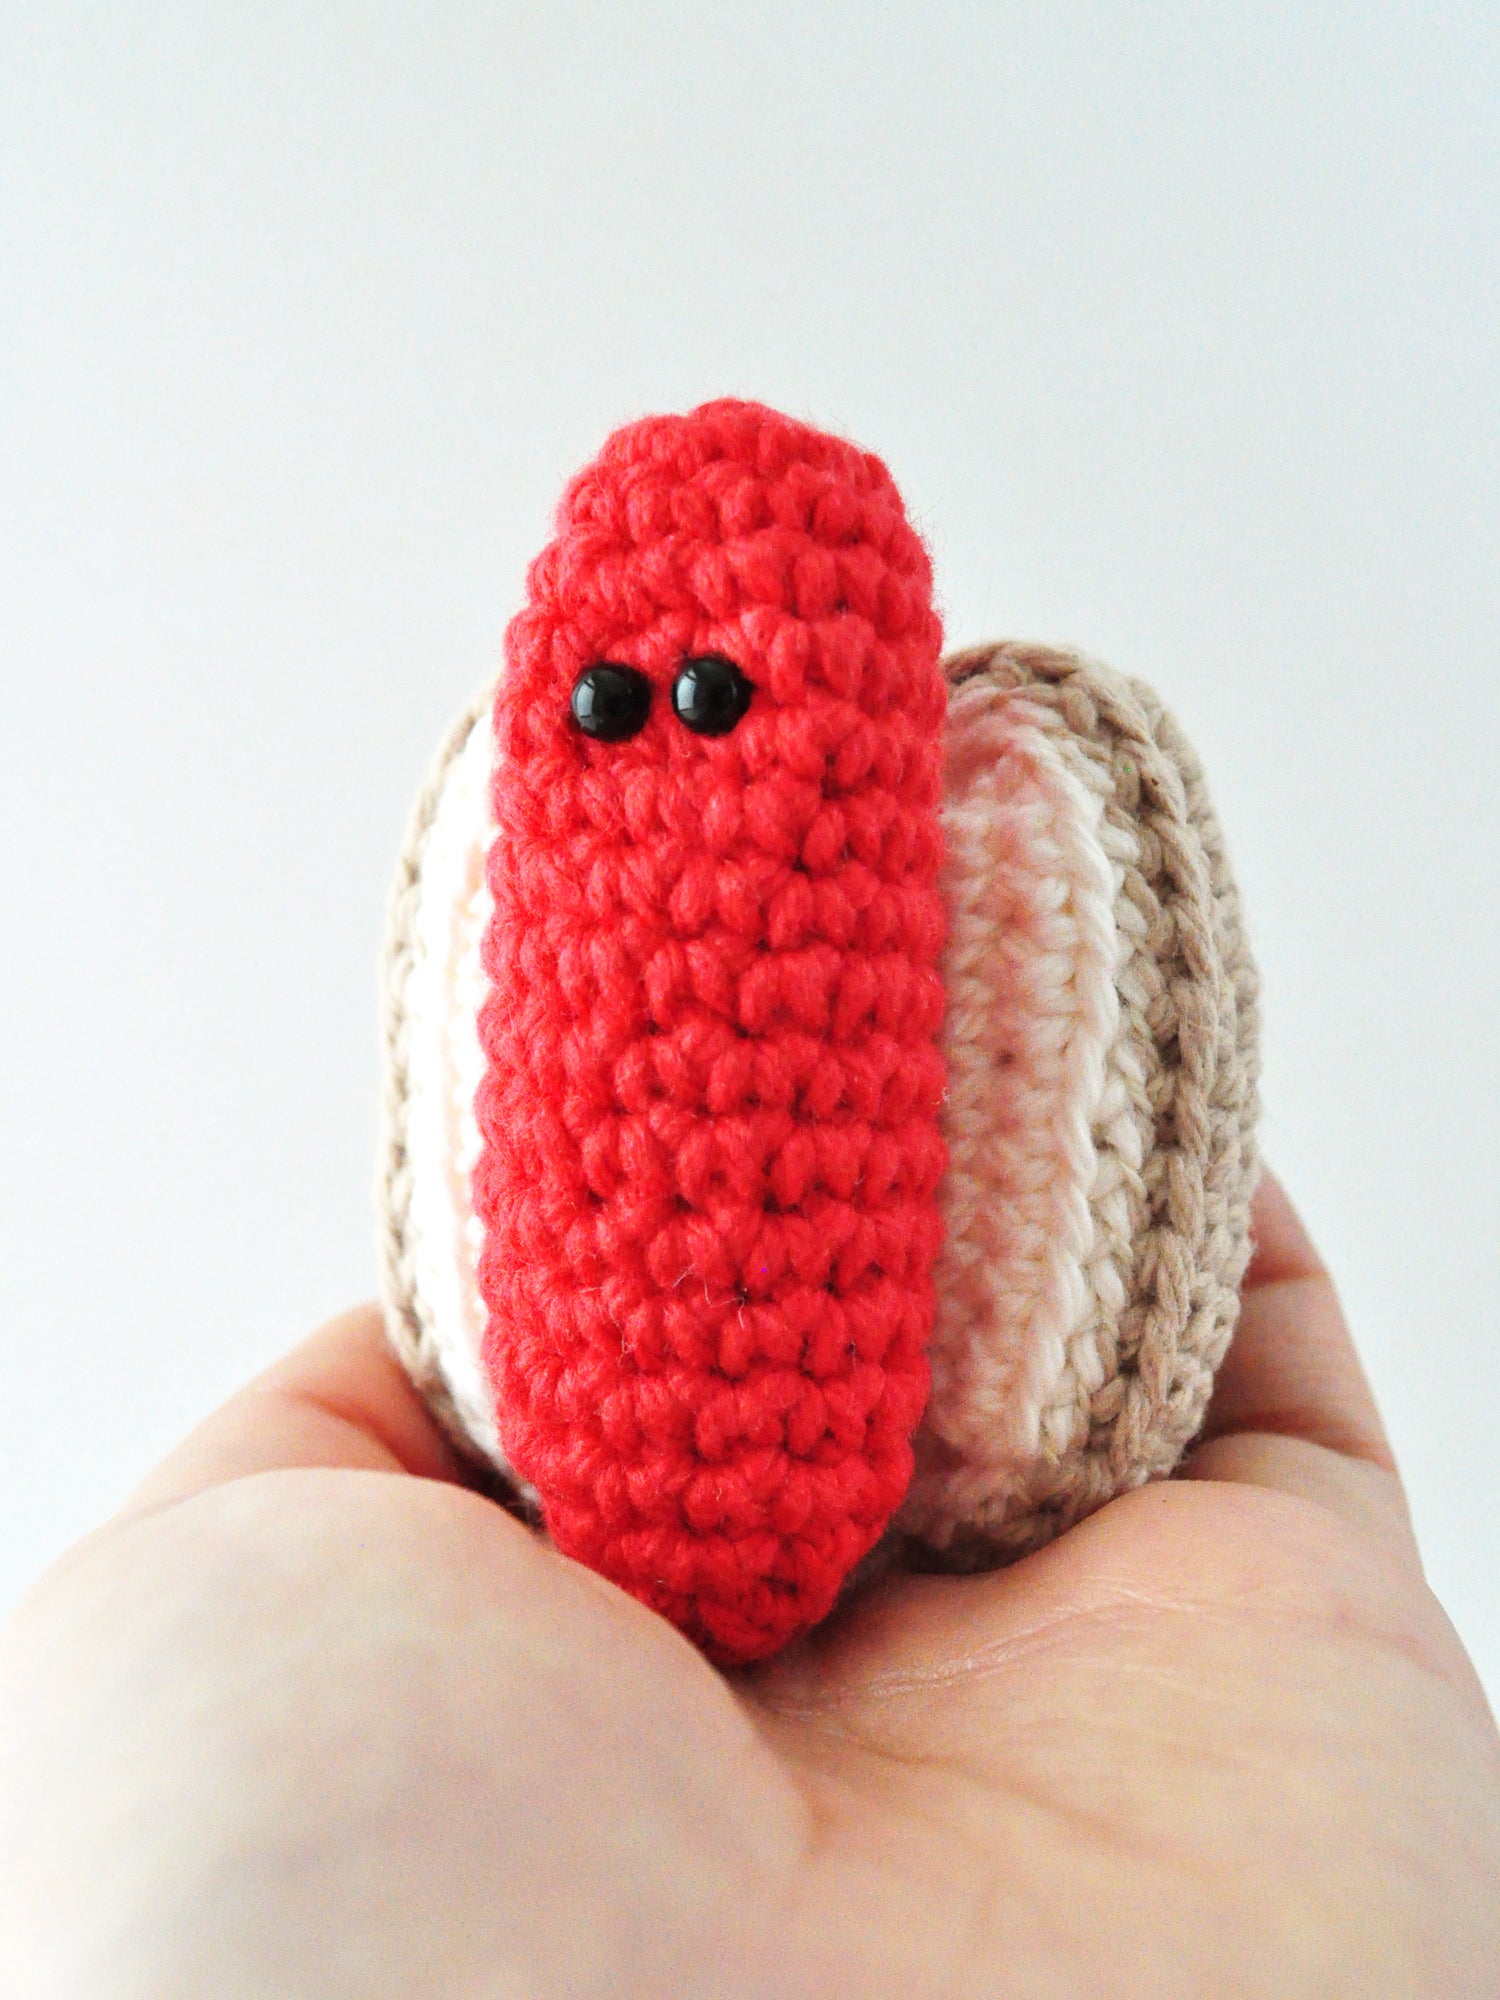 Hot Dog Crochet Kit